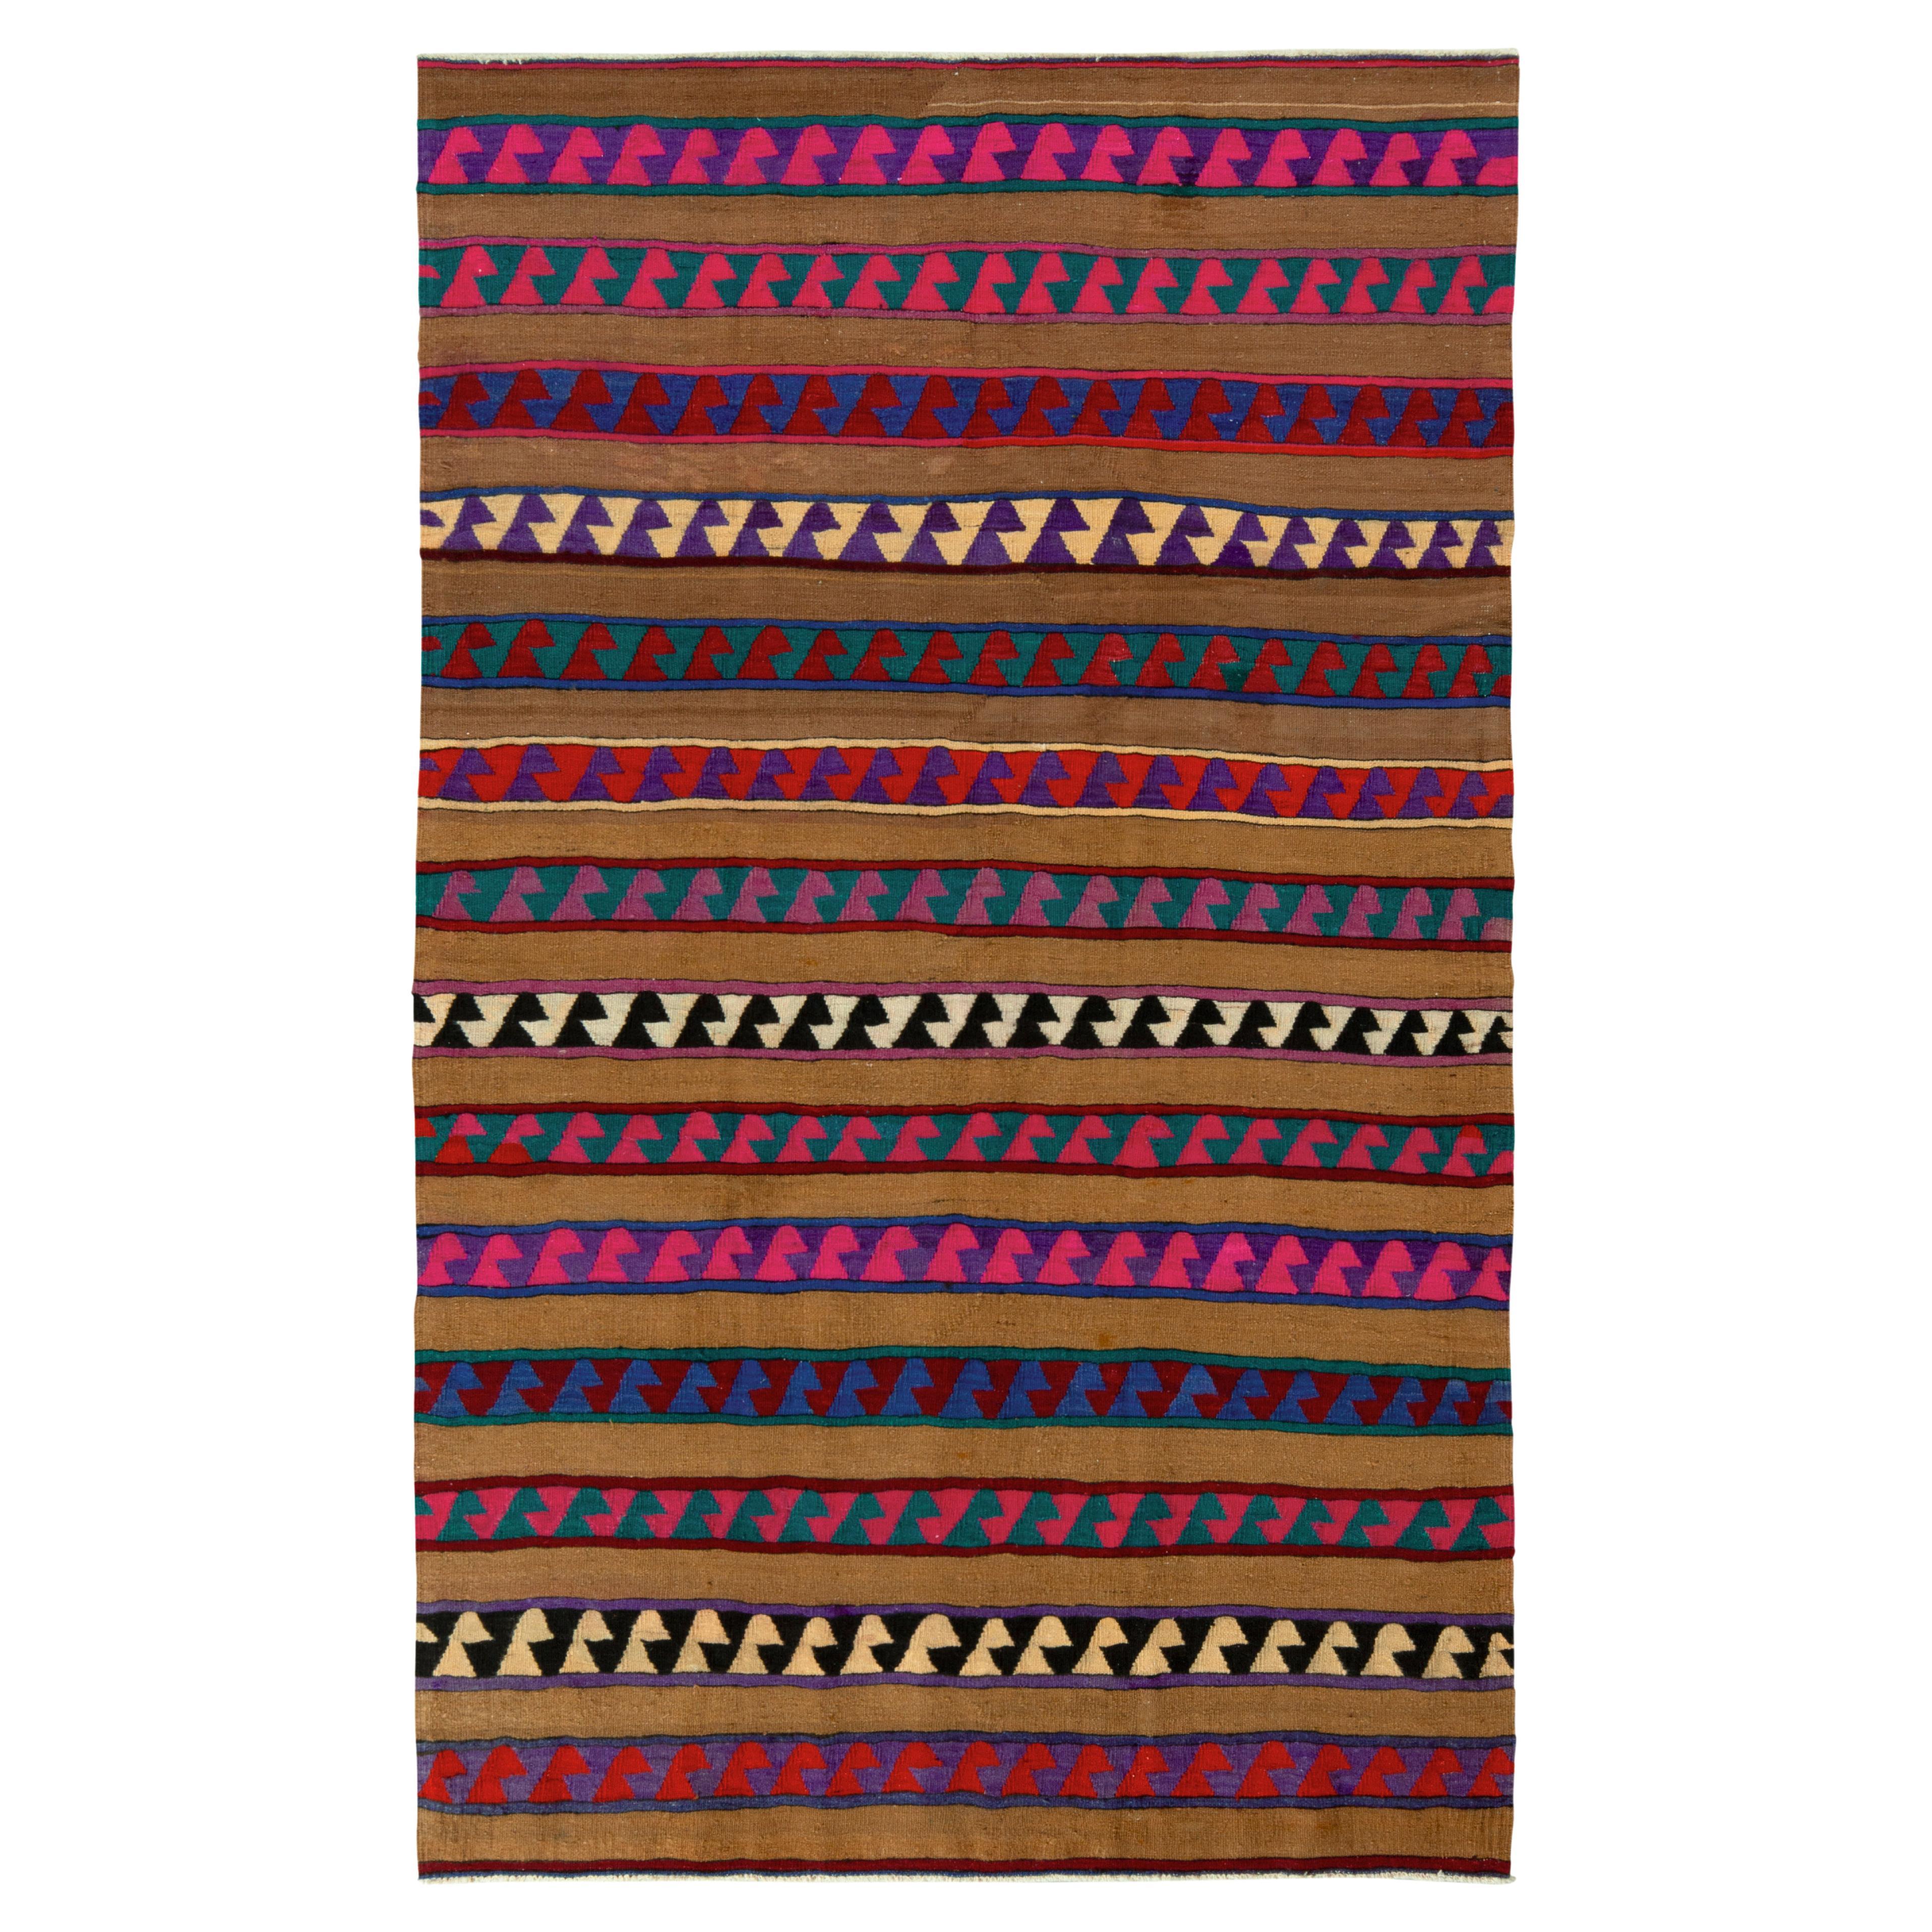 Türkischer Kelim-Teppich in Braun mit seltenem rosa Streifenmuster von Teppich & Kelim